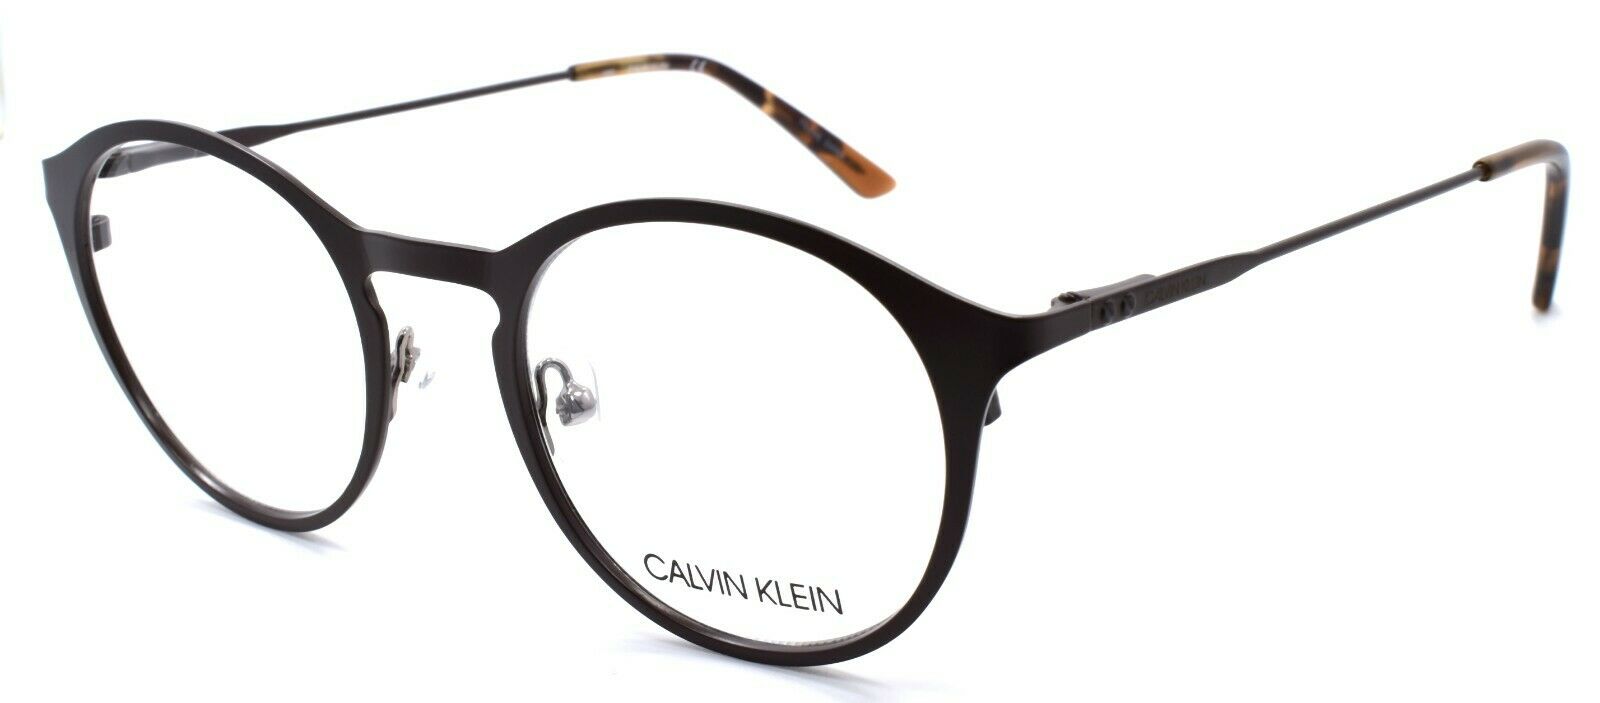 1-Calvin Klein C20112 201 Men's Eyeglasses Frames 47-20-150 Matte Dark Brown-883901127737-IKSpecs